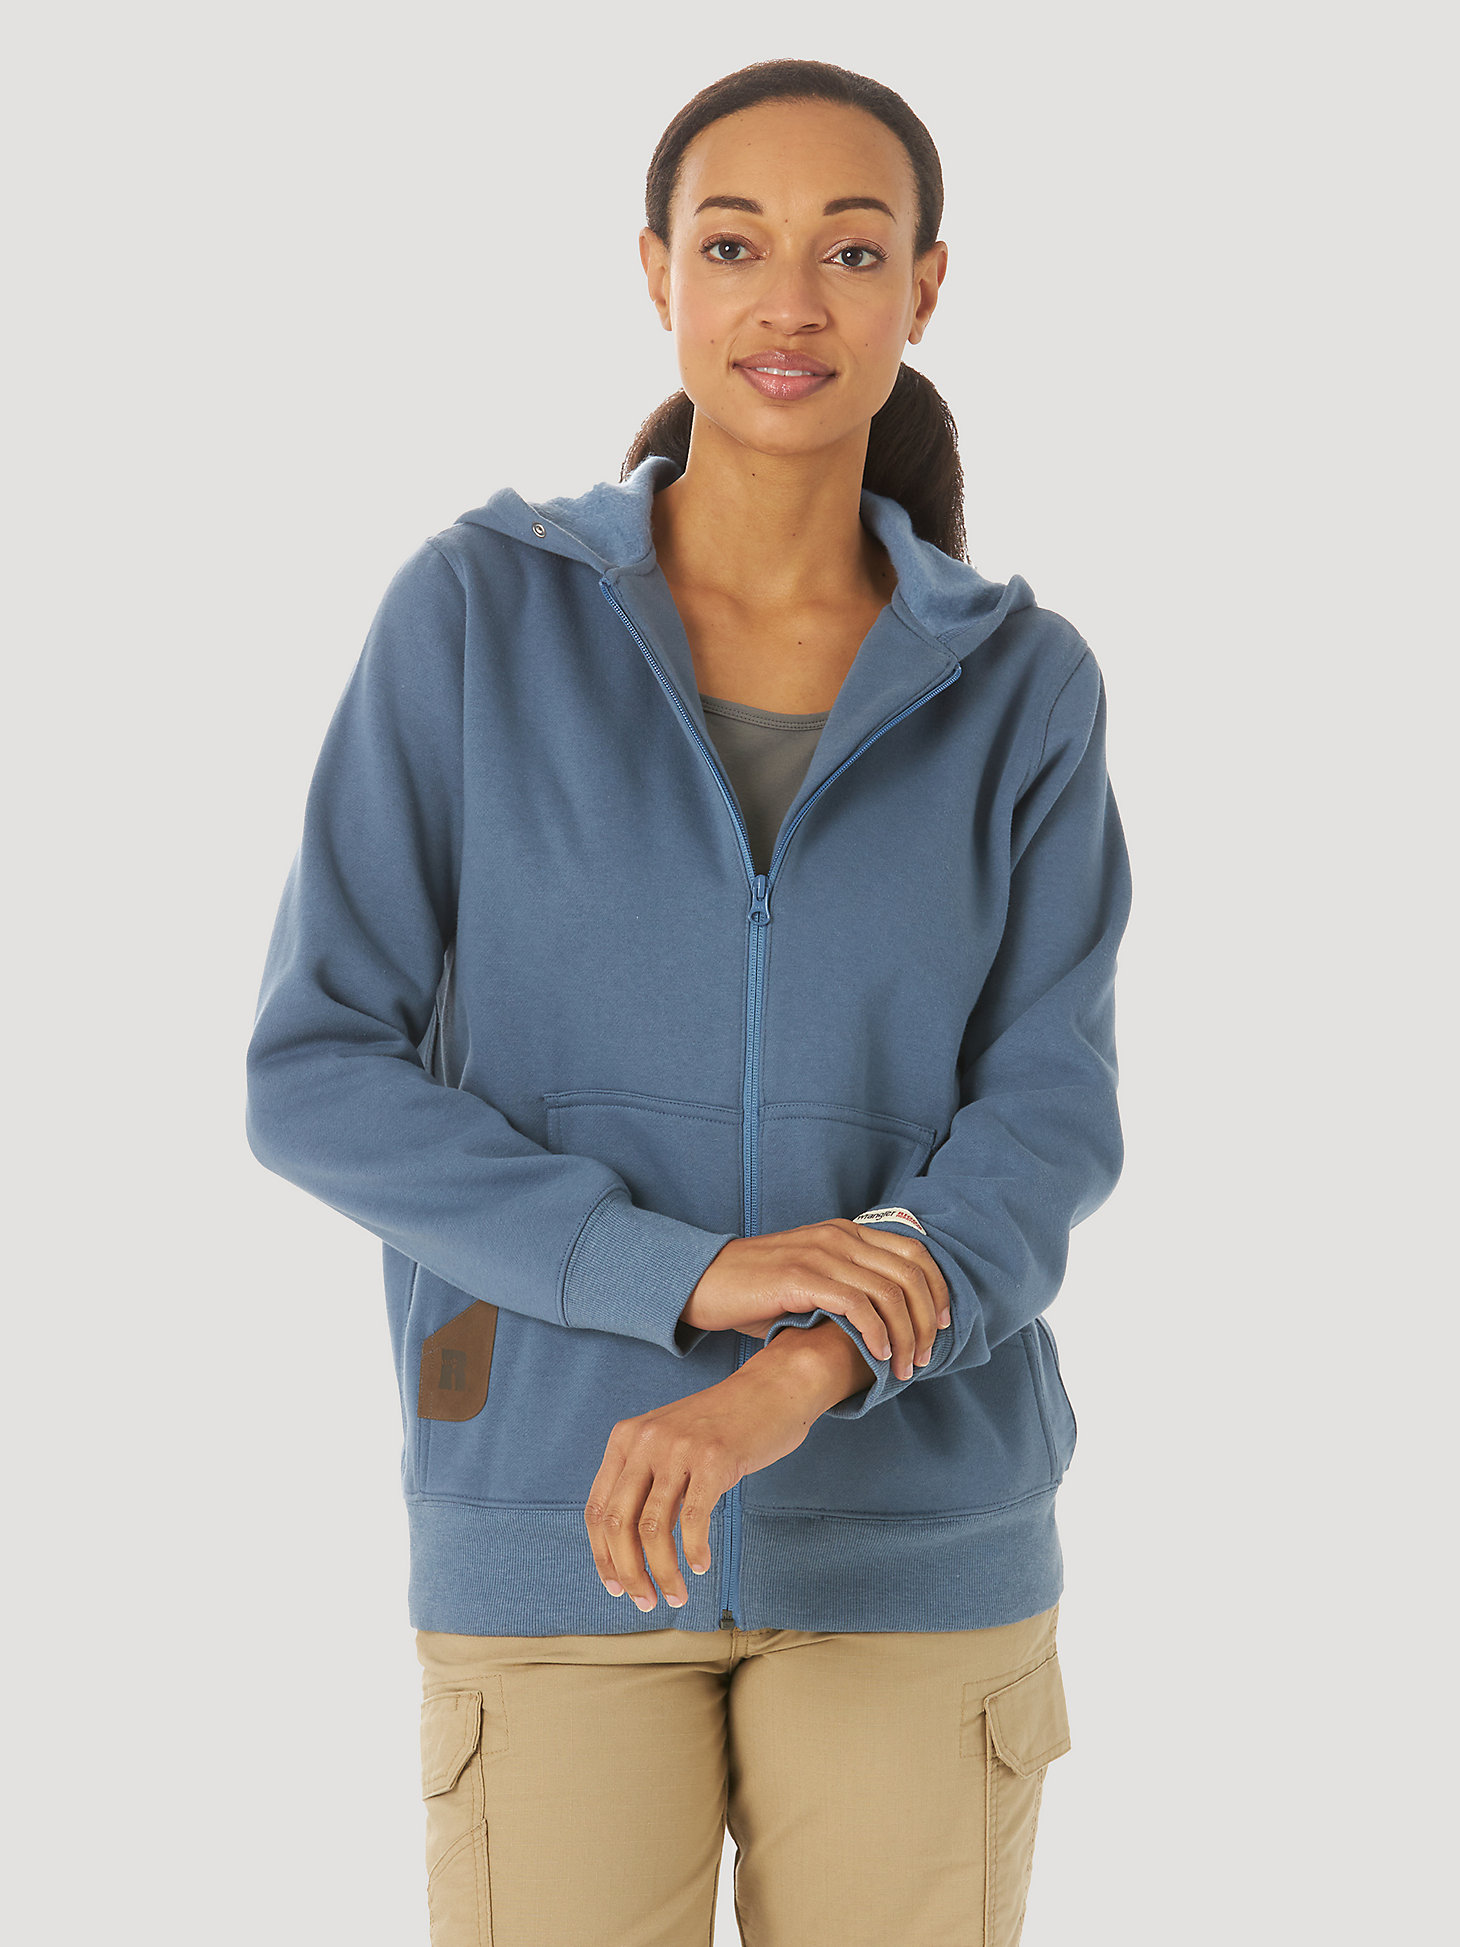 6-Colour S-2XL Work Wear Causal Top Gildan Ladies' Full Zip Hooded Sweatshirt 